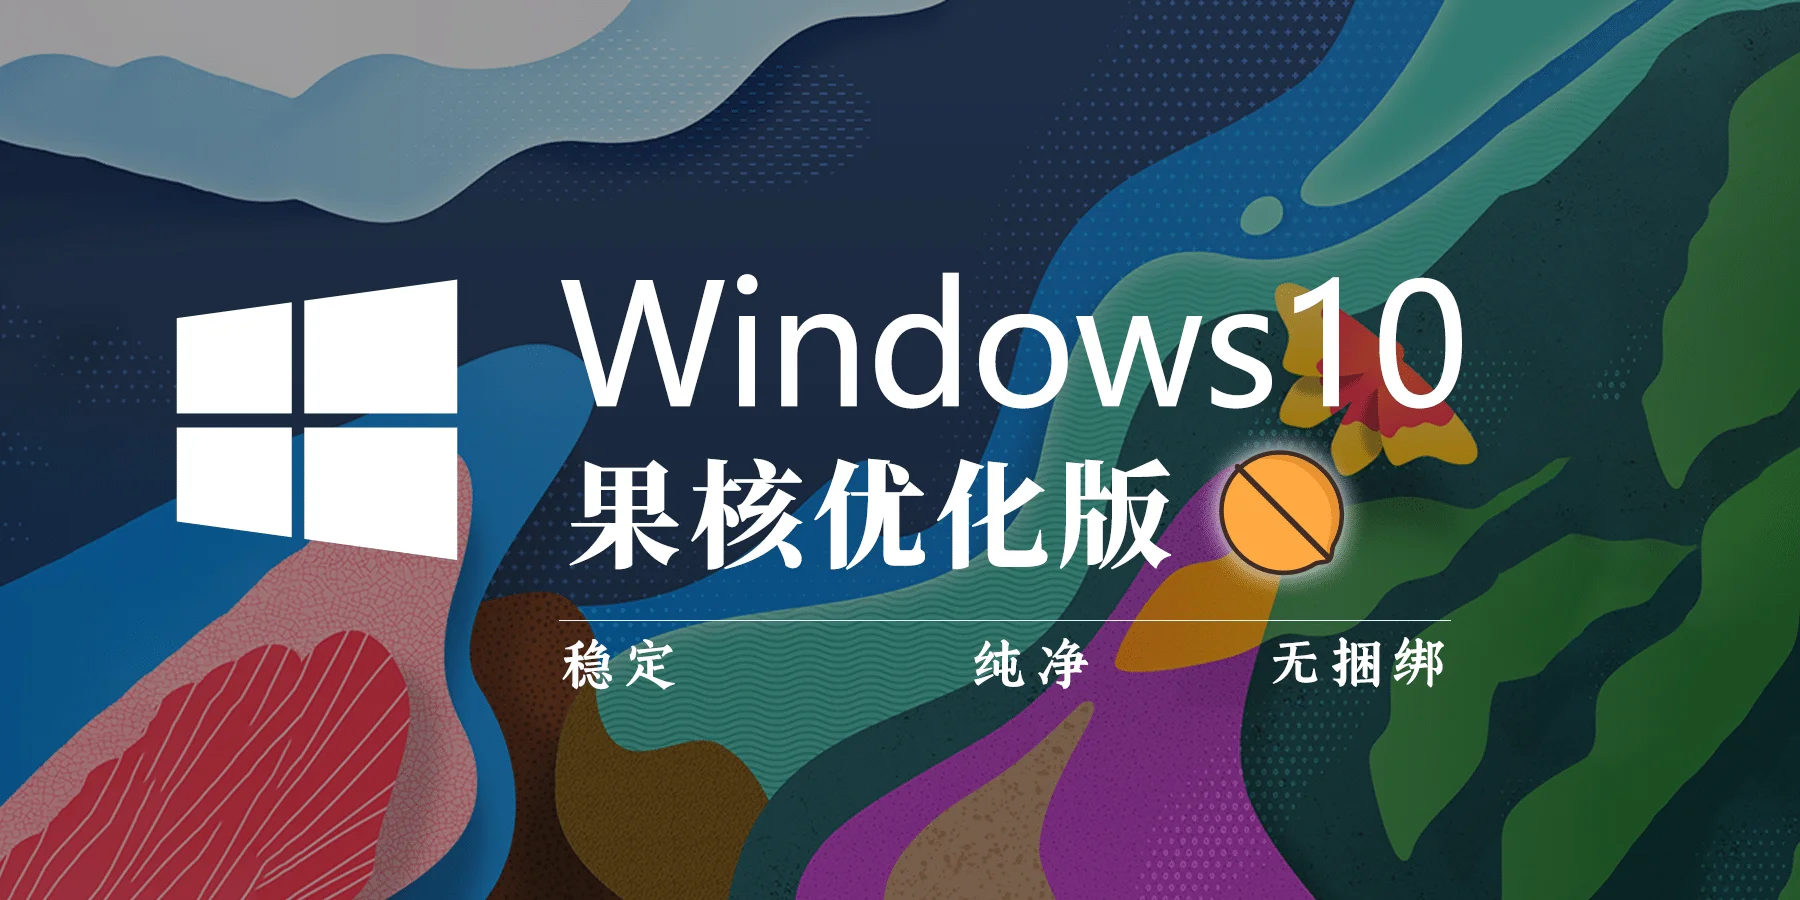 【果核】Windows 10 Pro 21H2(19044.1679) 优化精简版v2